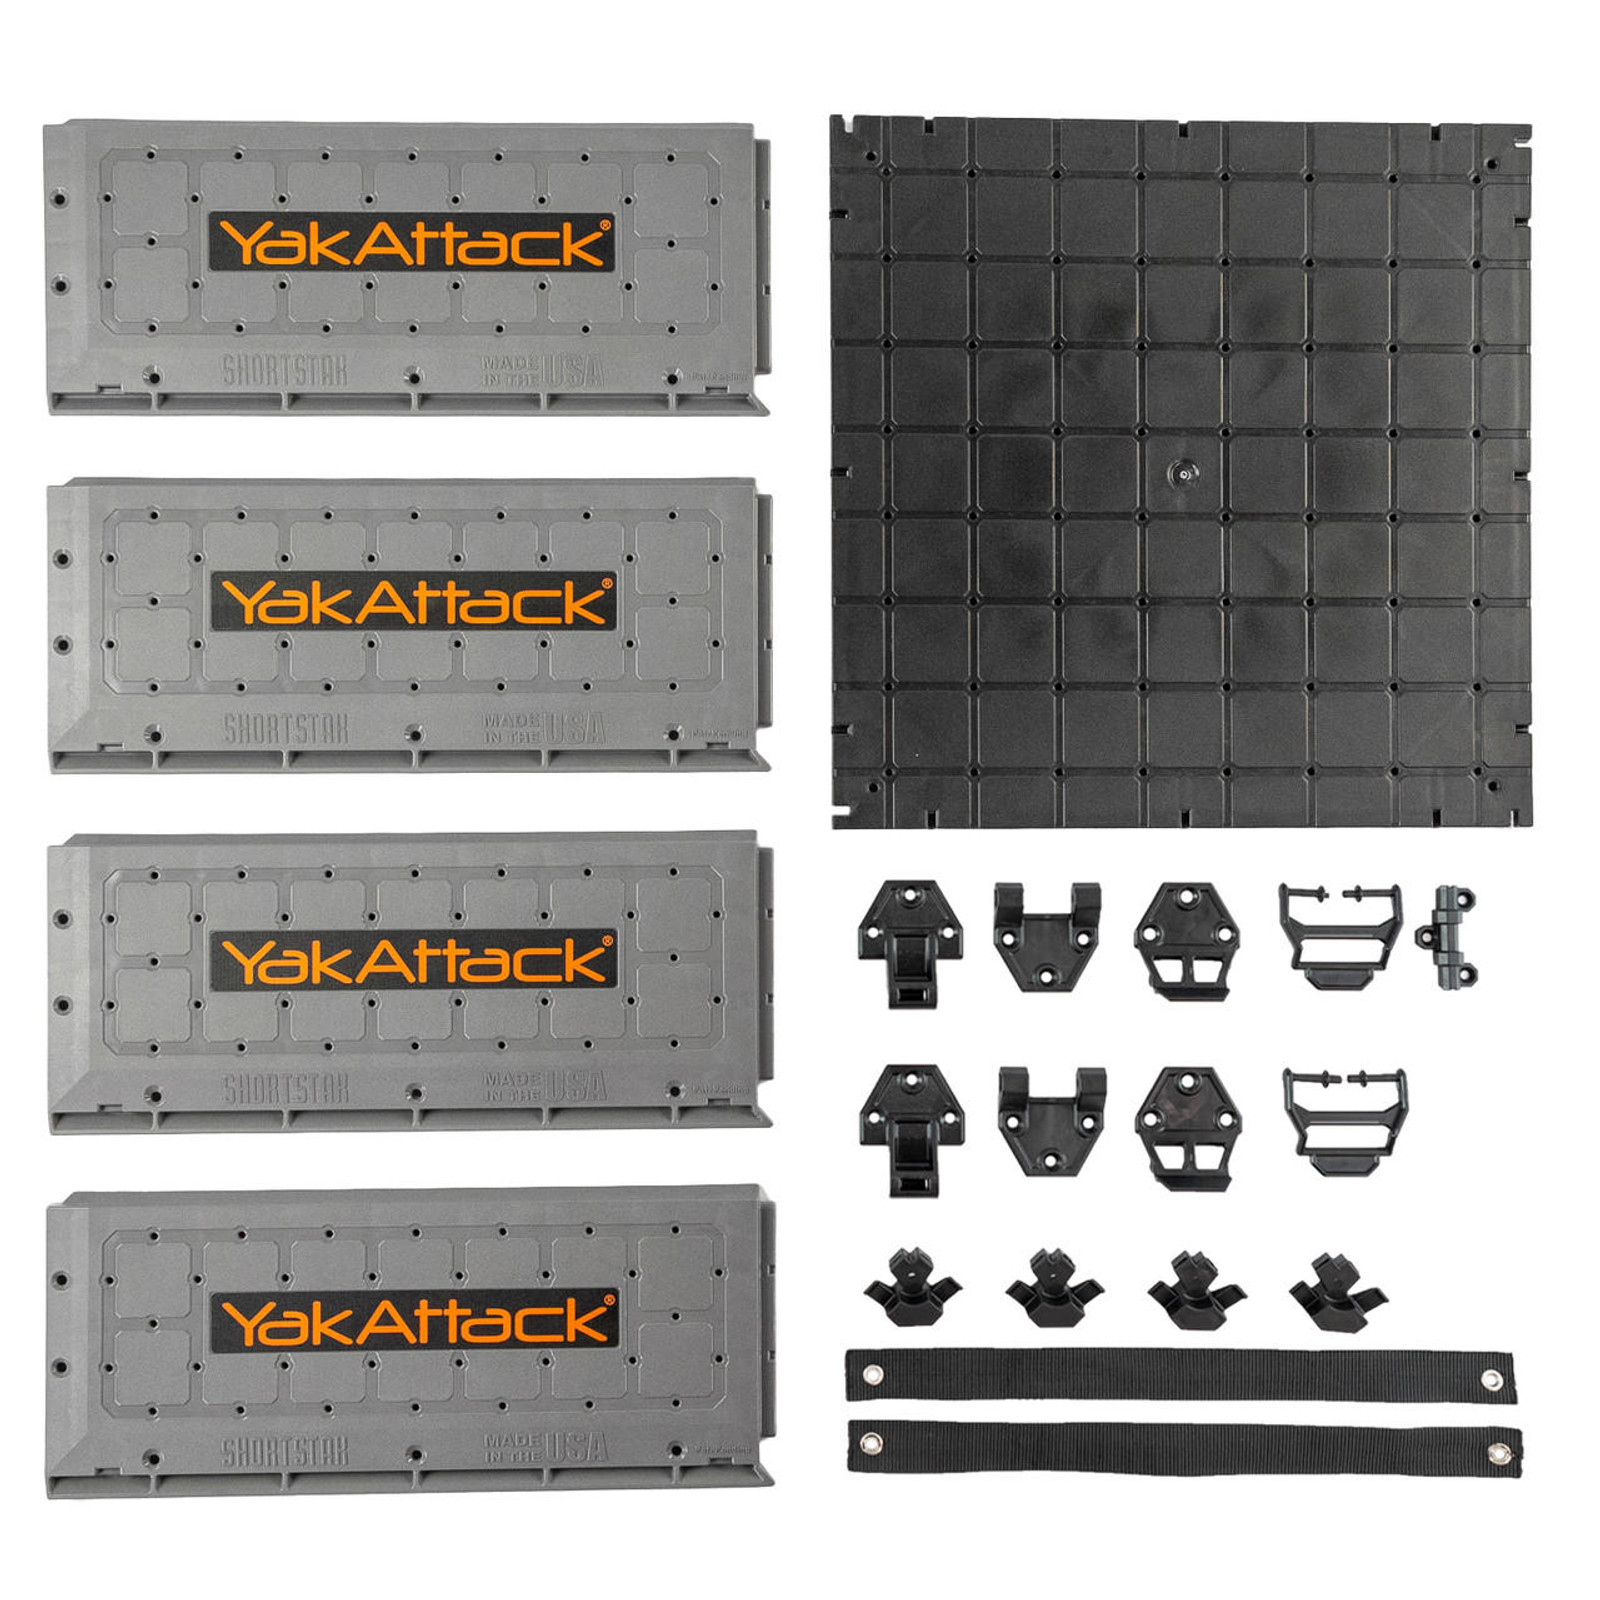  13x13 ShortStak Upgrade Kit for BlackPak Pro, Battleship Grey 